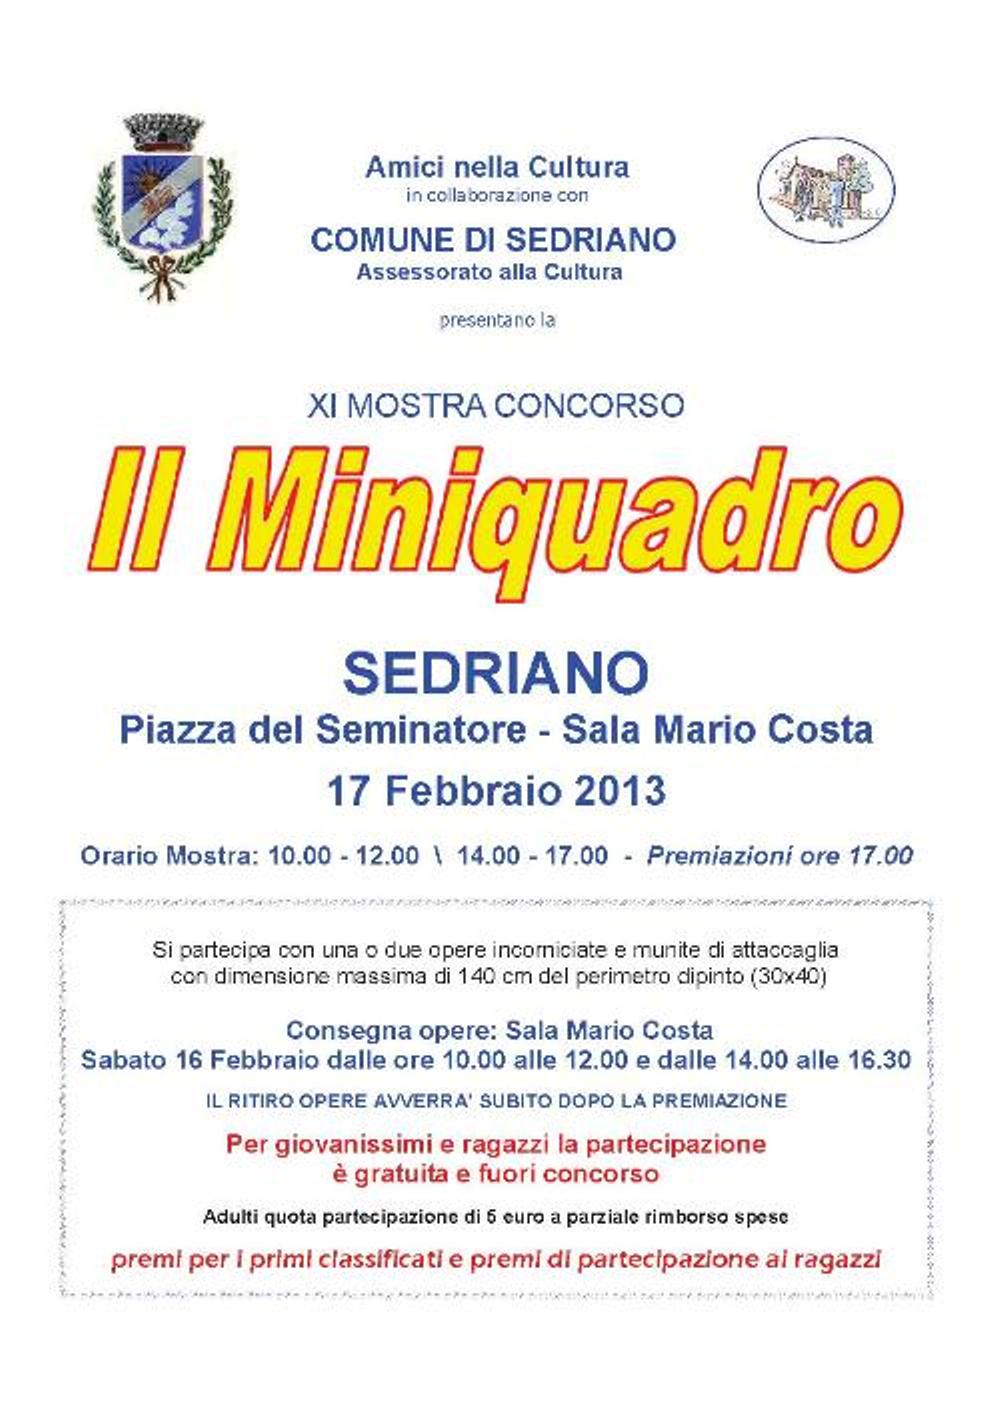 anno 2013 Mostra Concorso "Il Miniquadro" - Sedriano, 17 Febbraio 2013.